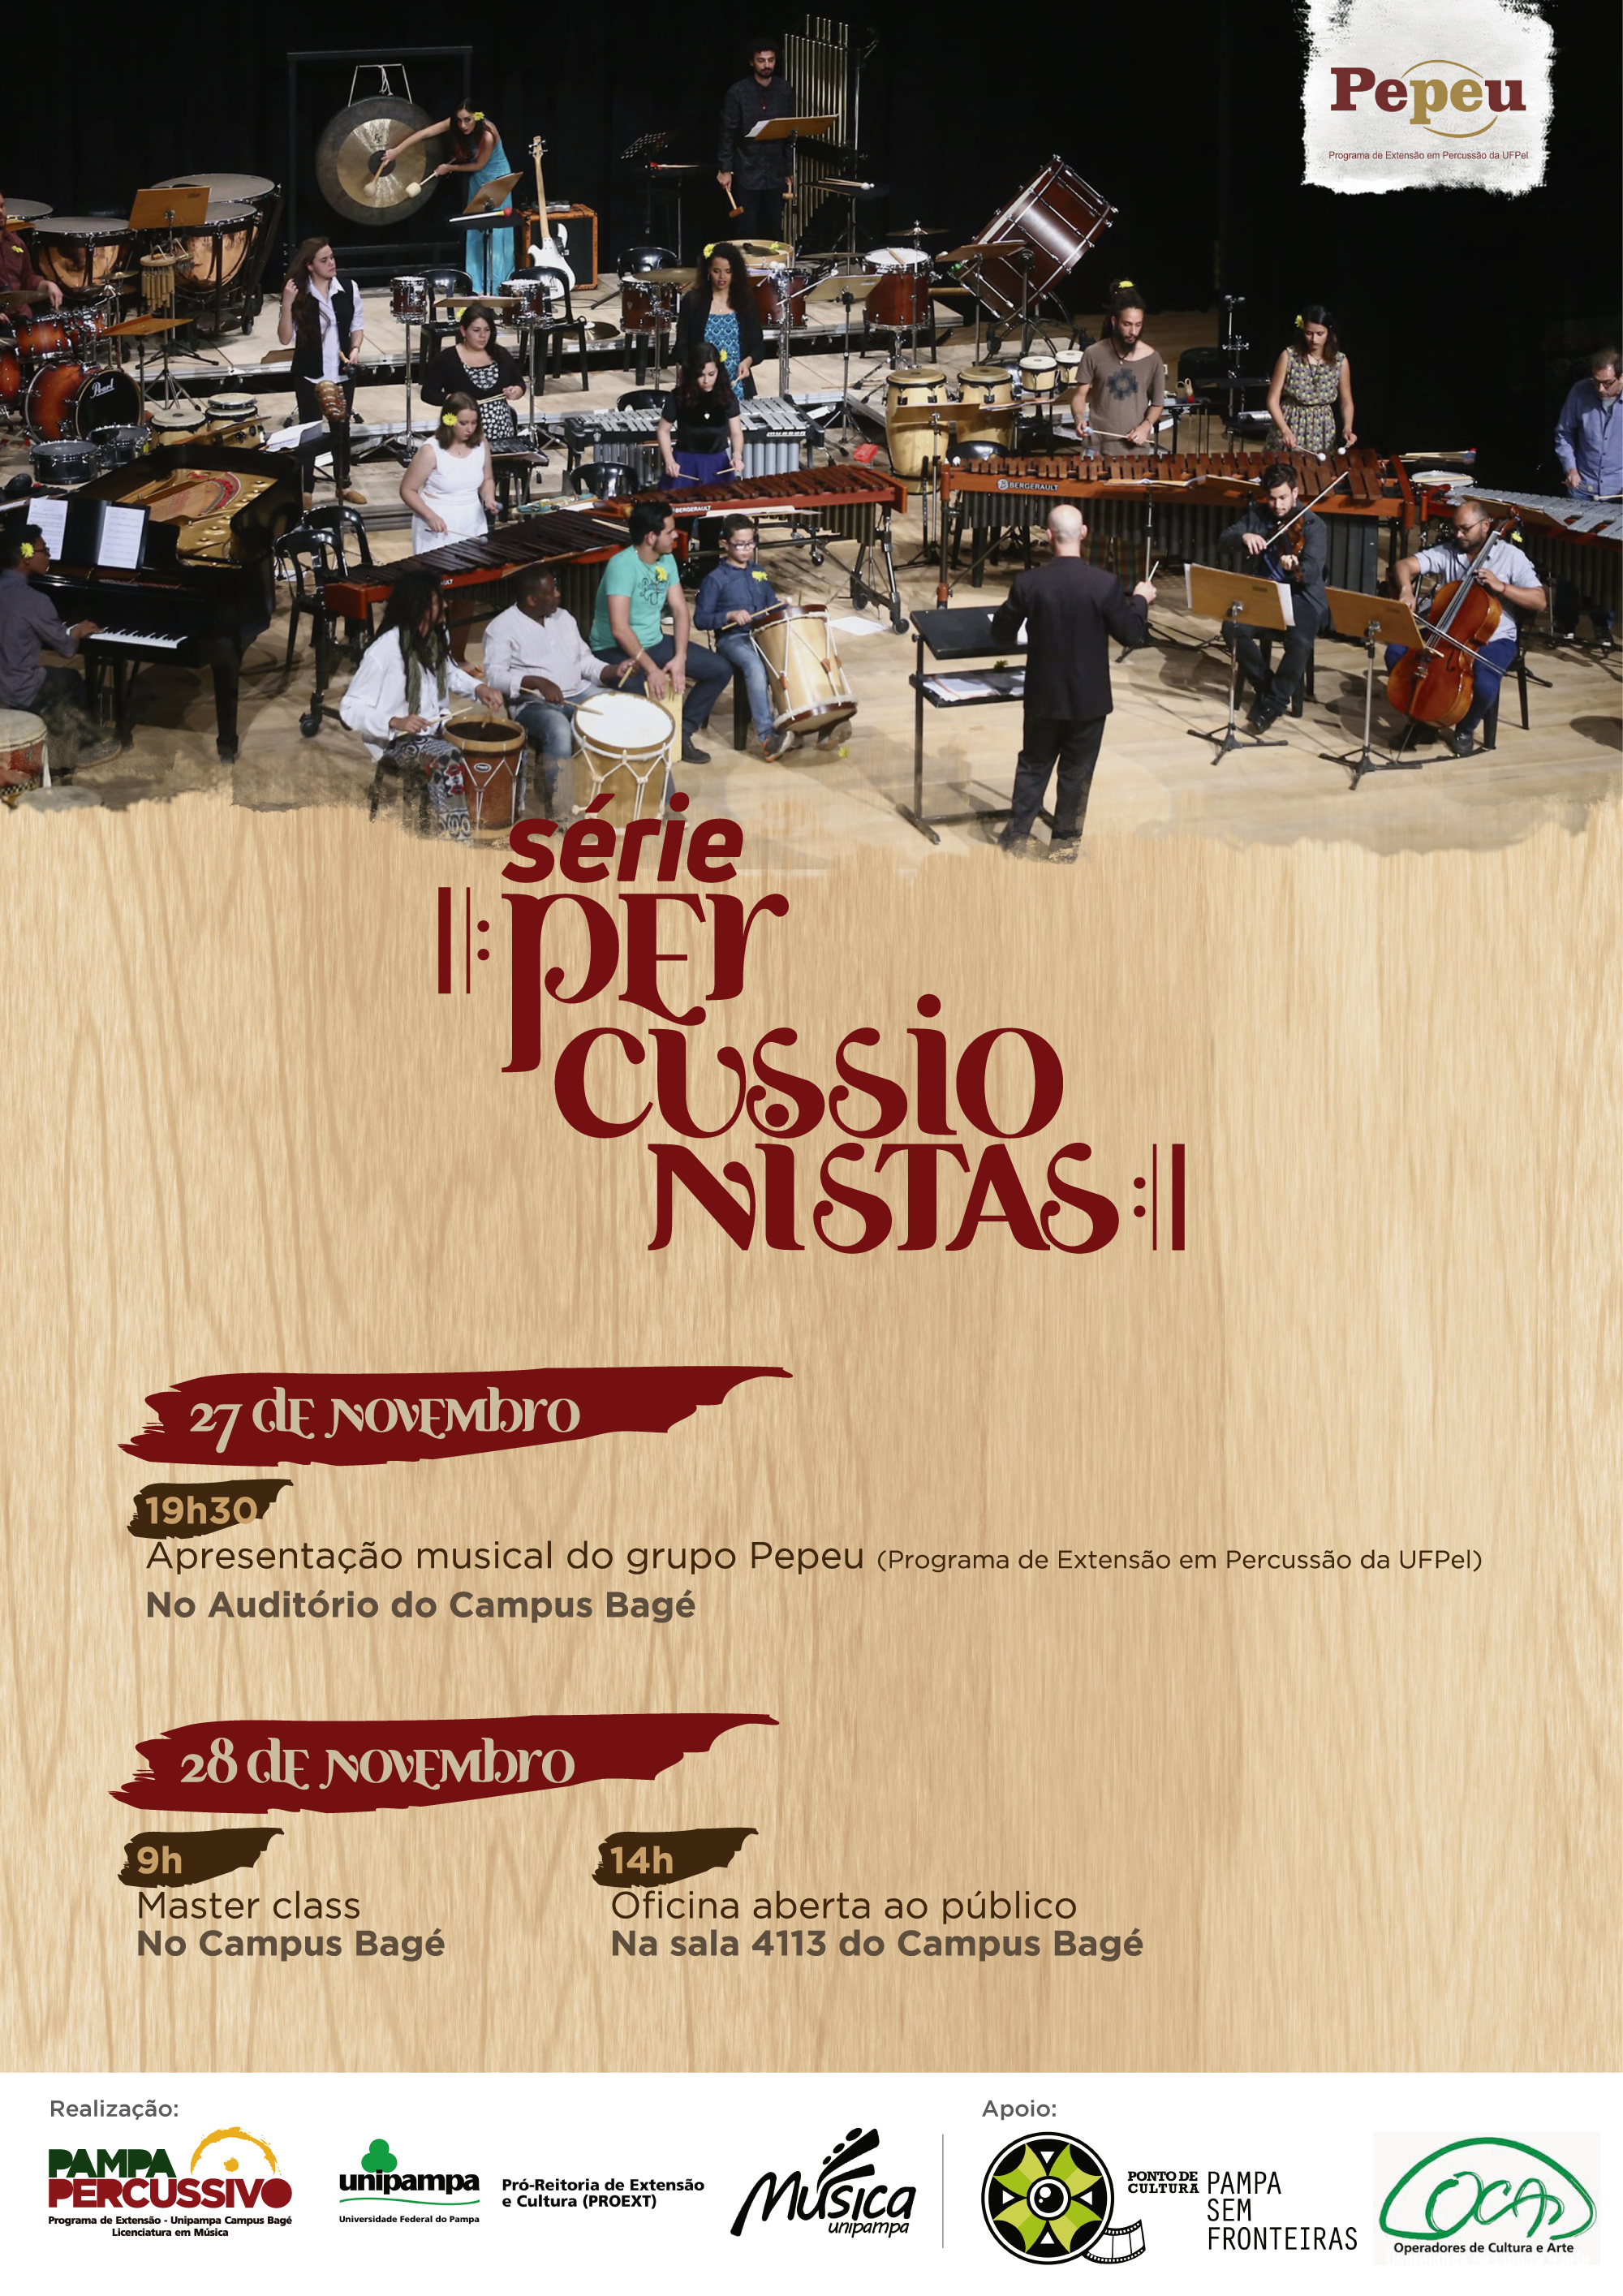 Banner publicitário com anúncio do 4º concerto da Série Percussionistas.